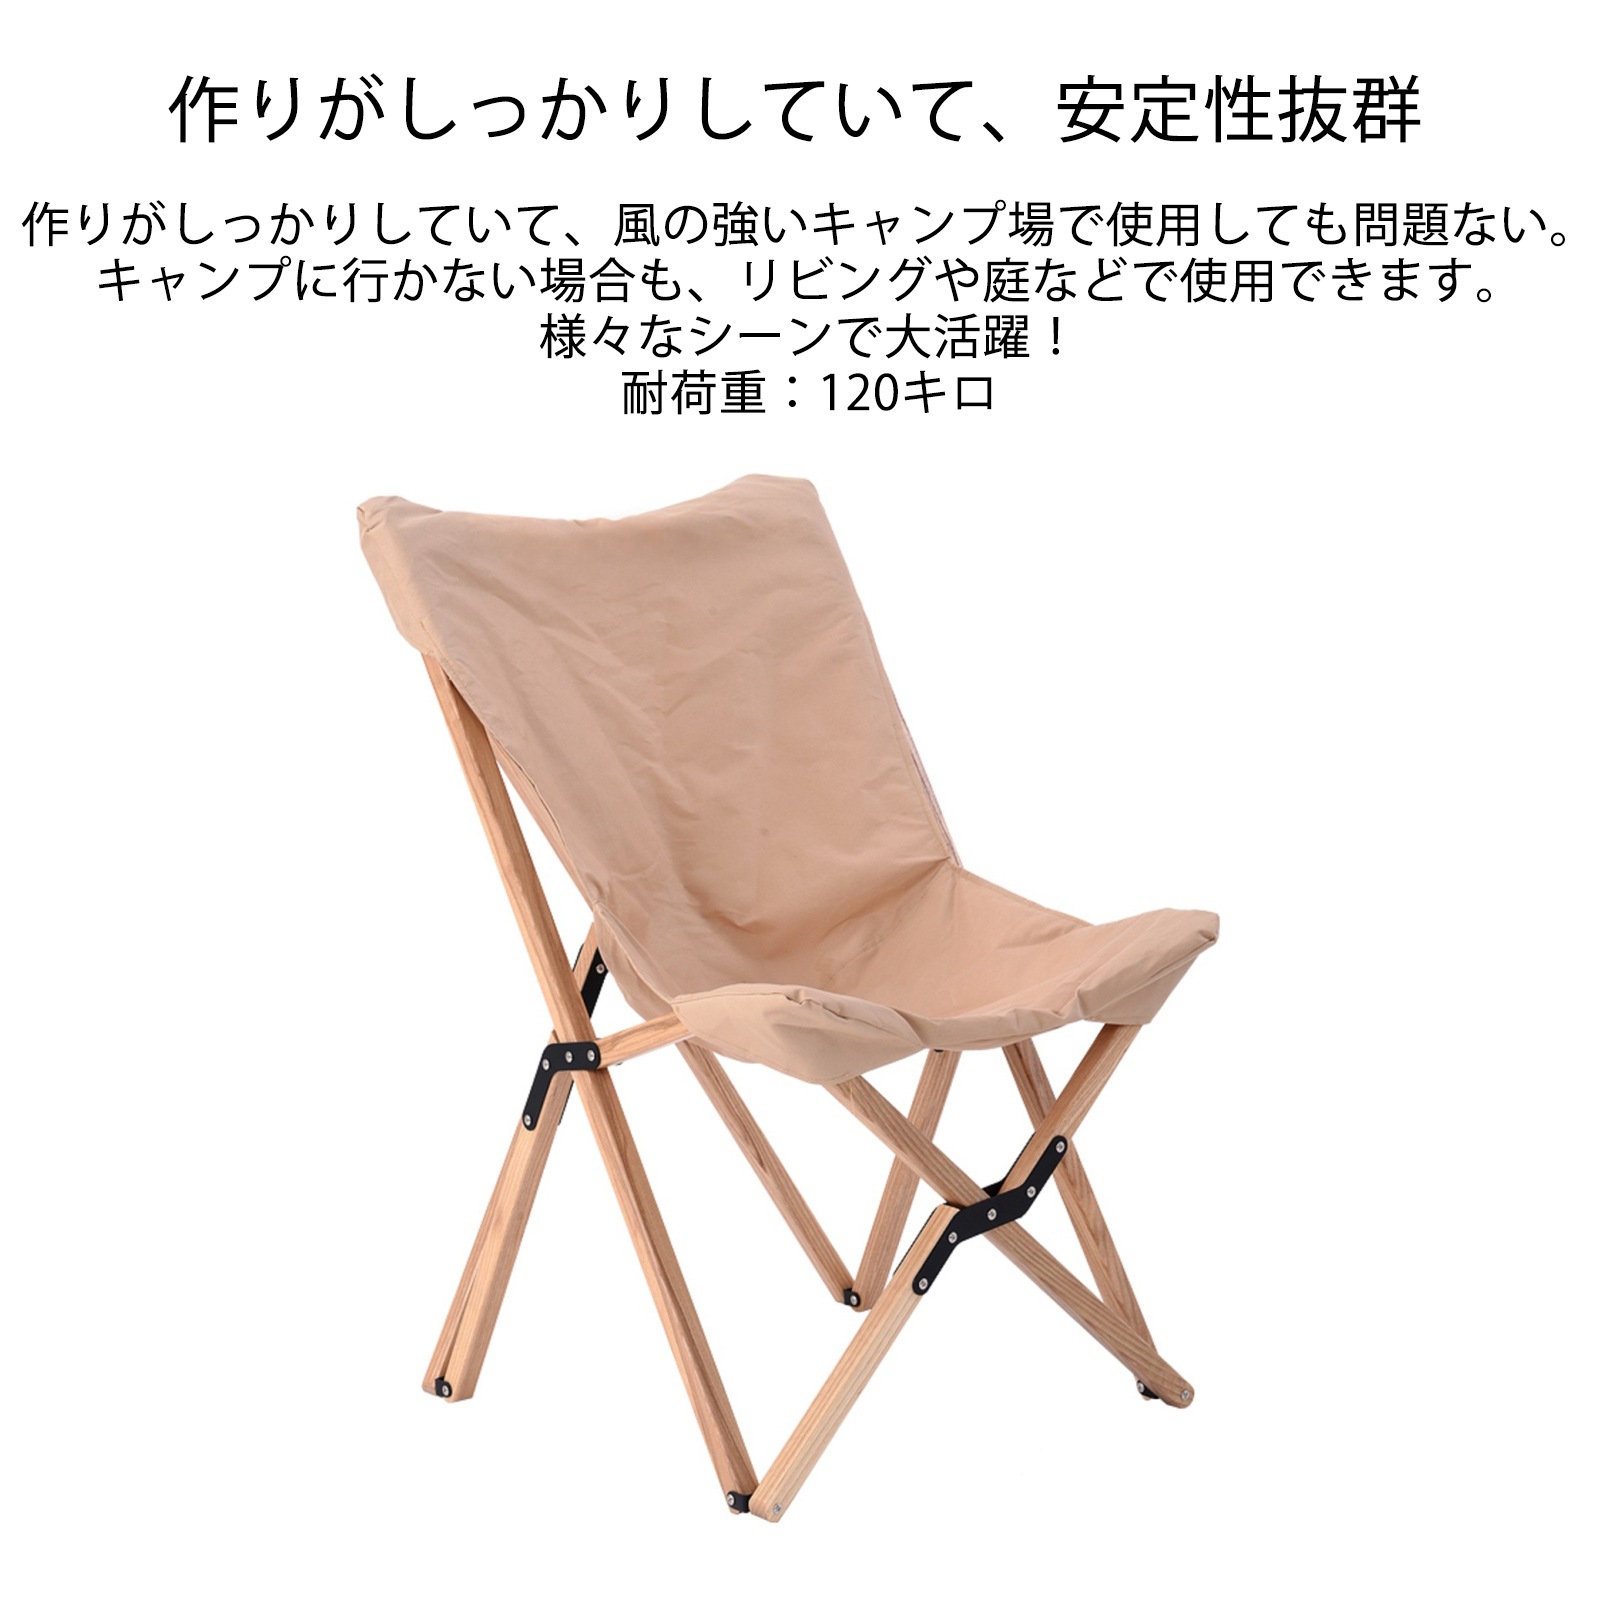 即納 アウトドアイス 木製 折り畳み おしゃれ キャンプ 椅子 新品 送料無料 折りたたみ コンパクト アウトドア